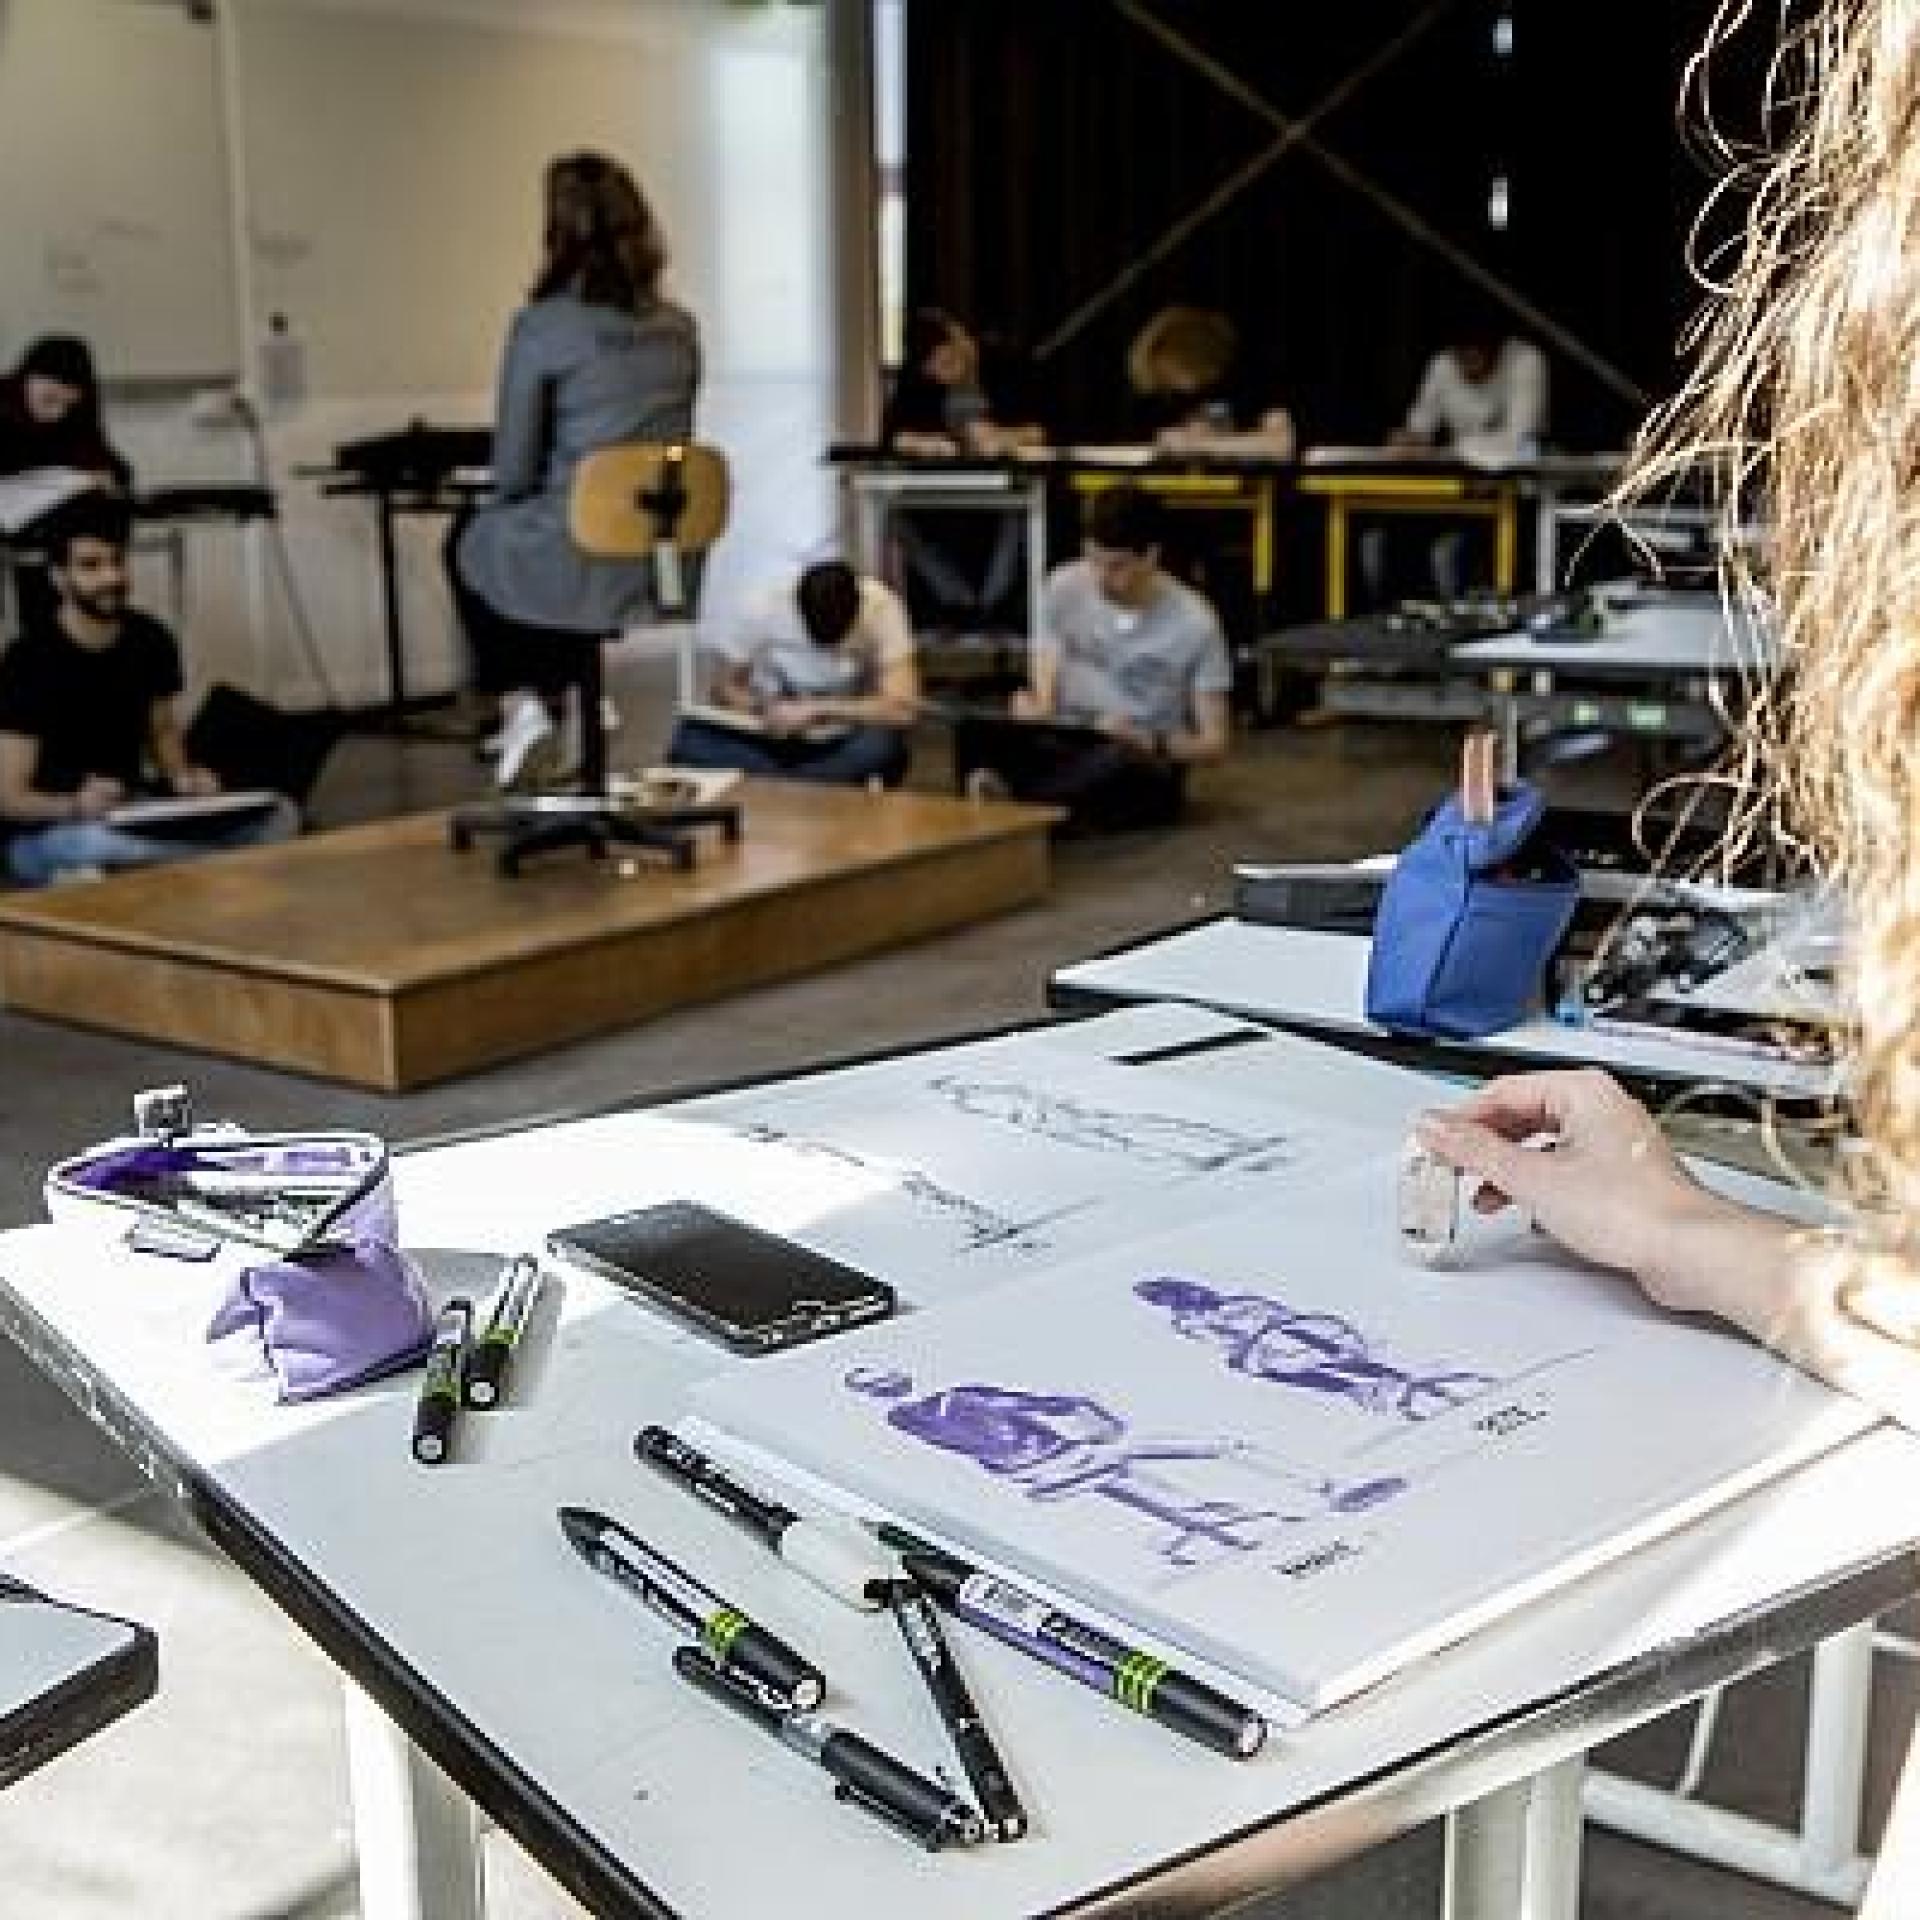 Etudiante de l'école de design de Nantes atlantique en train de dessiner